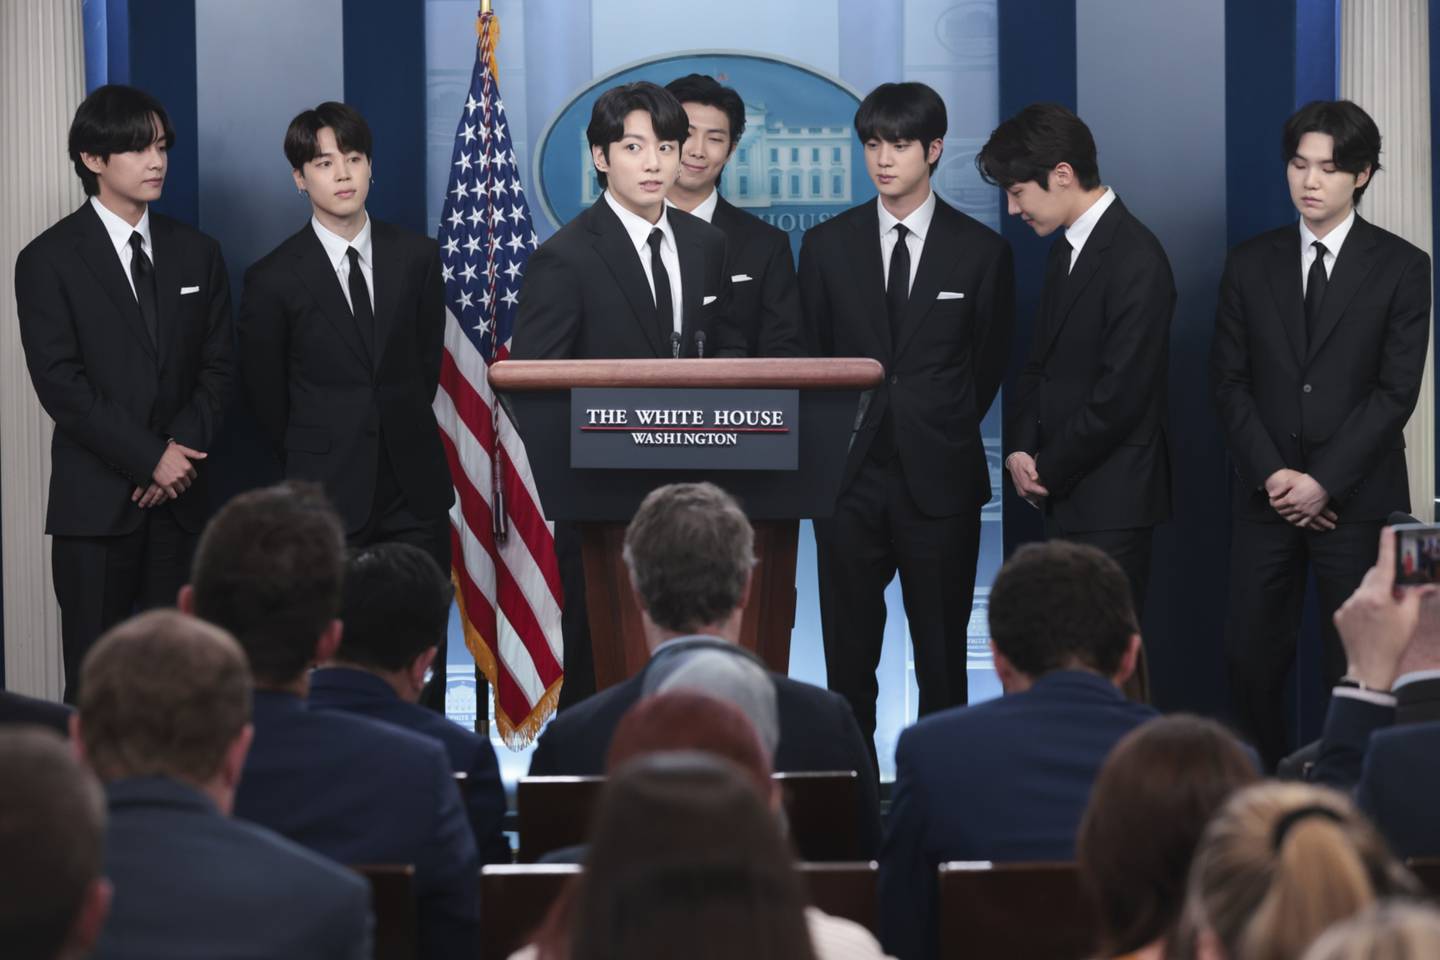 Membros da banda de K-Pop sul-coreana BTS durante uma coletiva de imprensa na Casa Branca em Washington